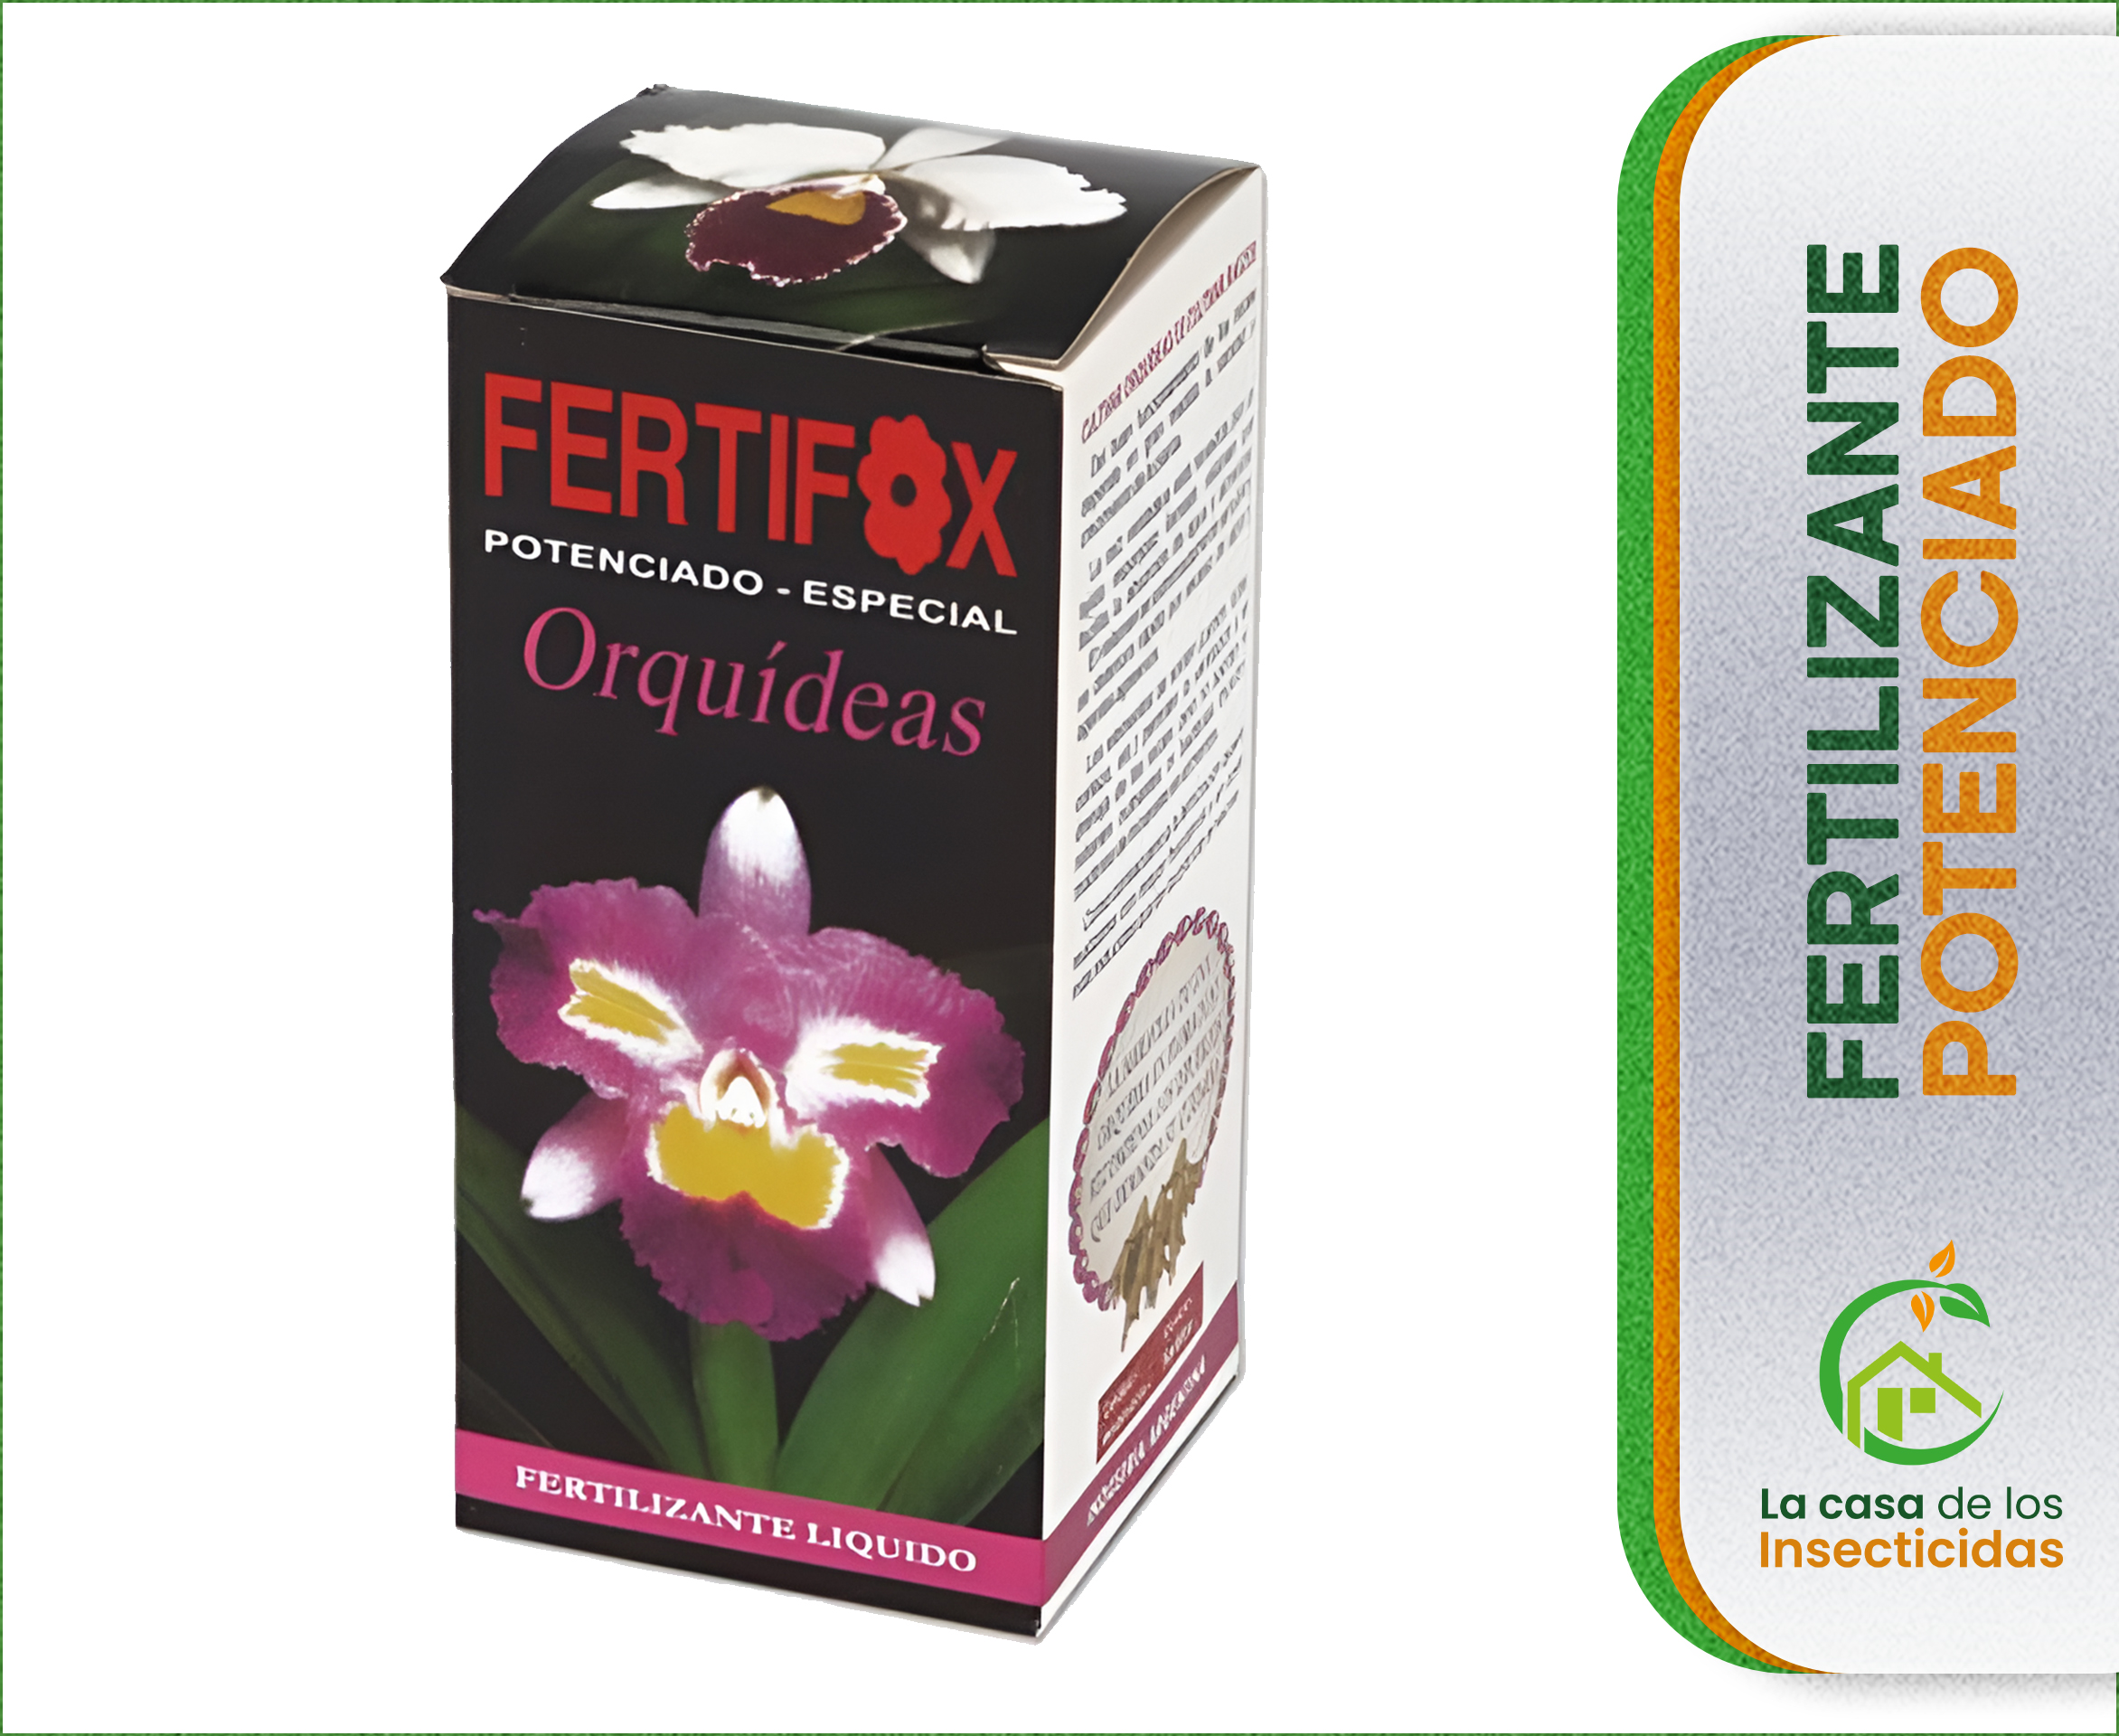 Fertifox Orquídeas fertilizante potenciado